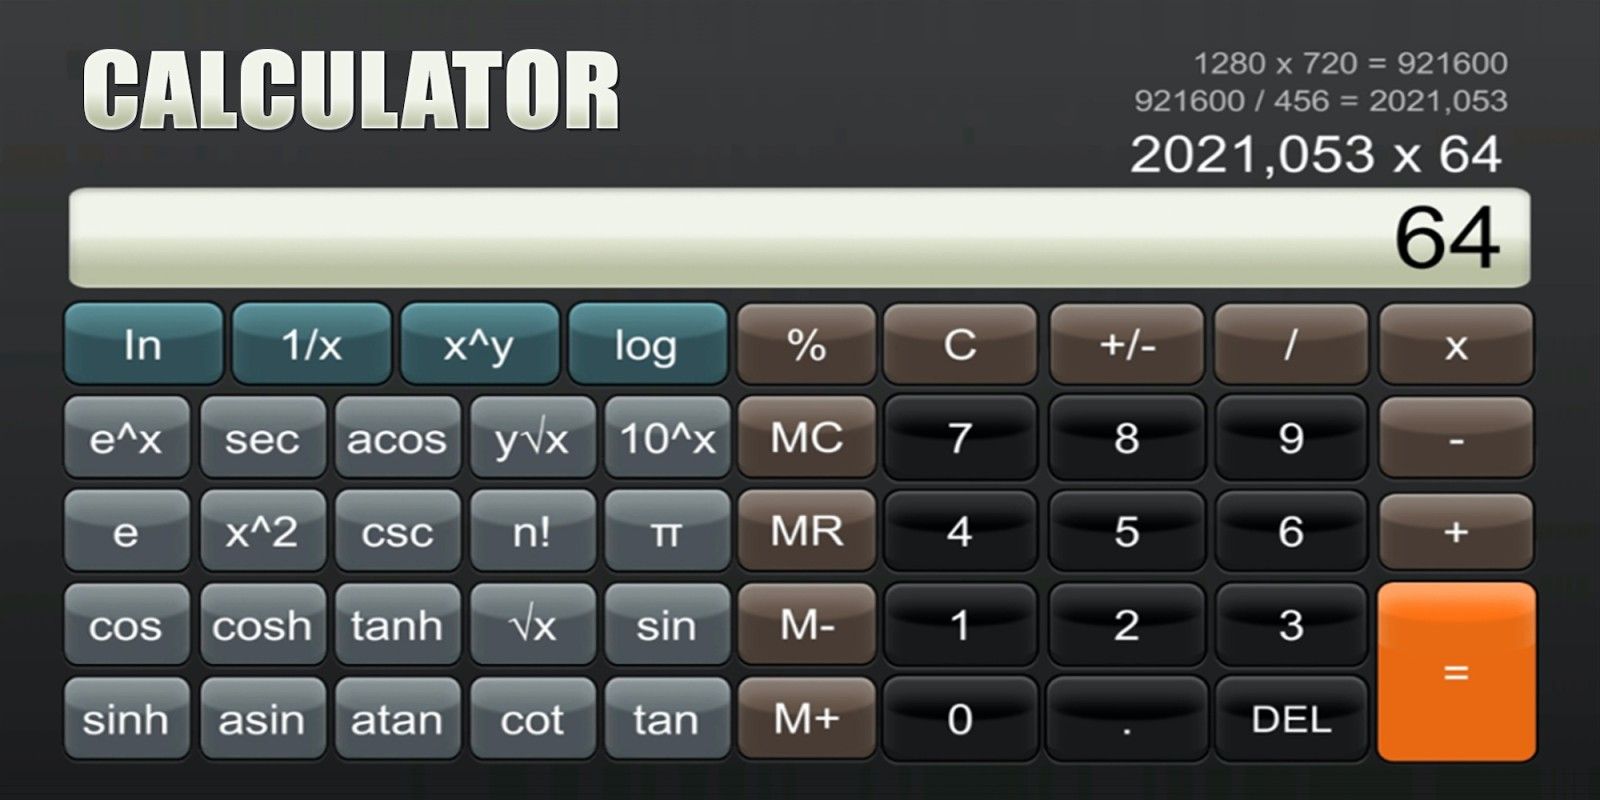 Скриншот программы Calculator для Nintendo Switch | Источник: Nintendo